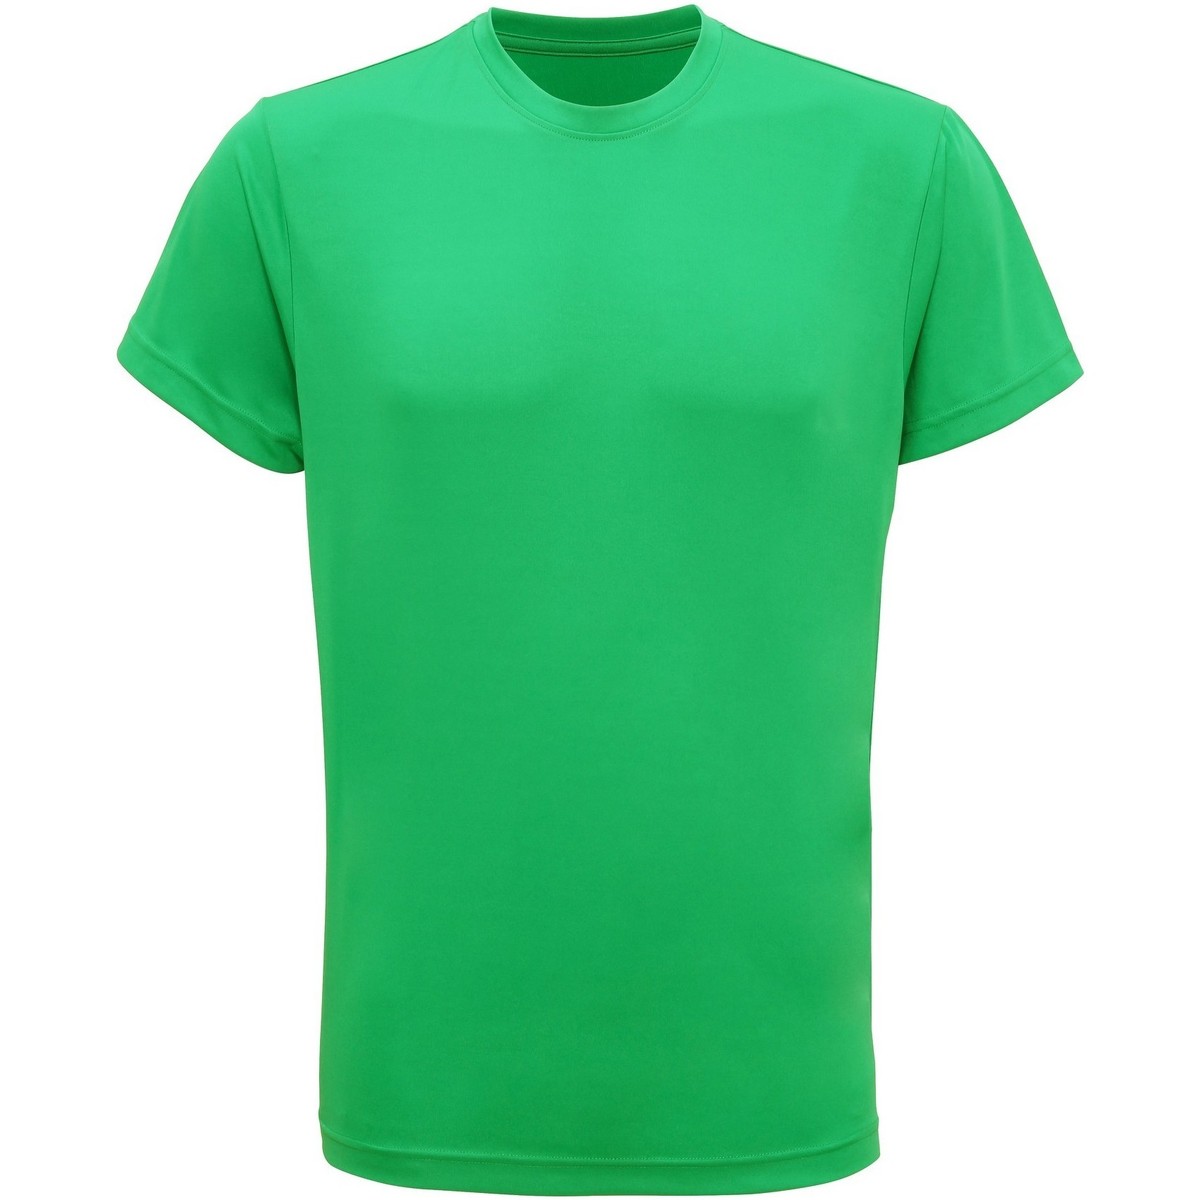 textil Hombre Camisetas manga corta Tridri TR010 Verde